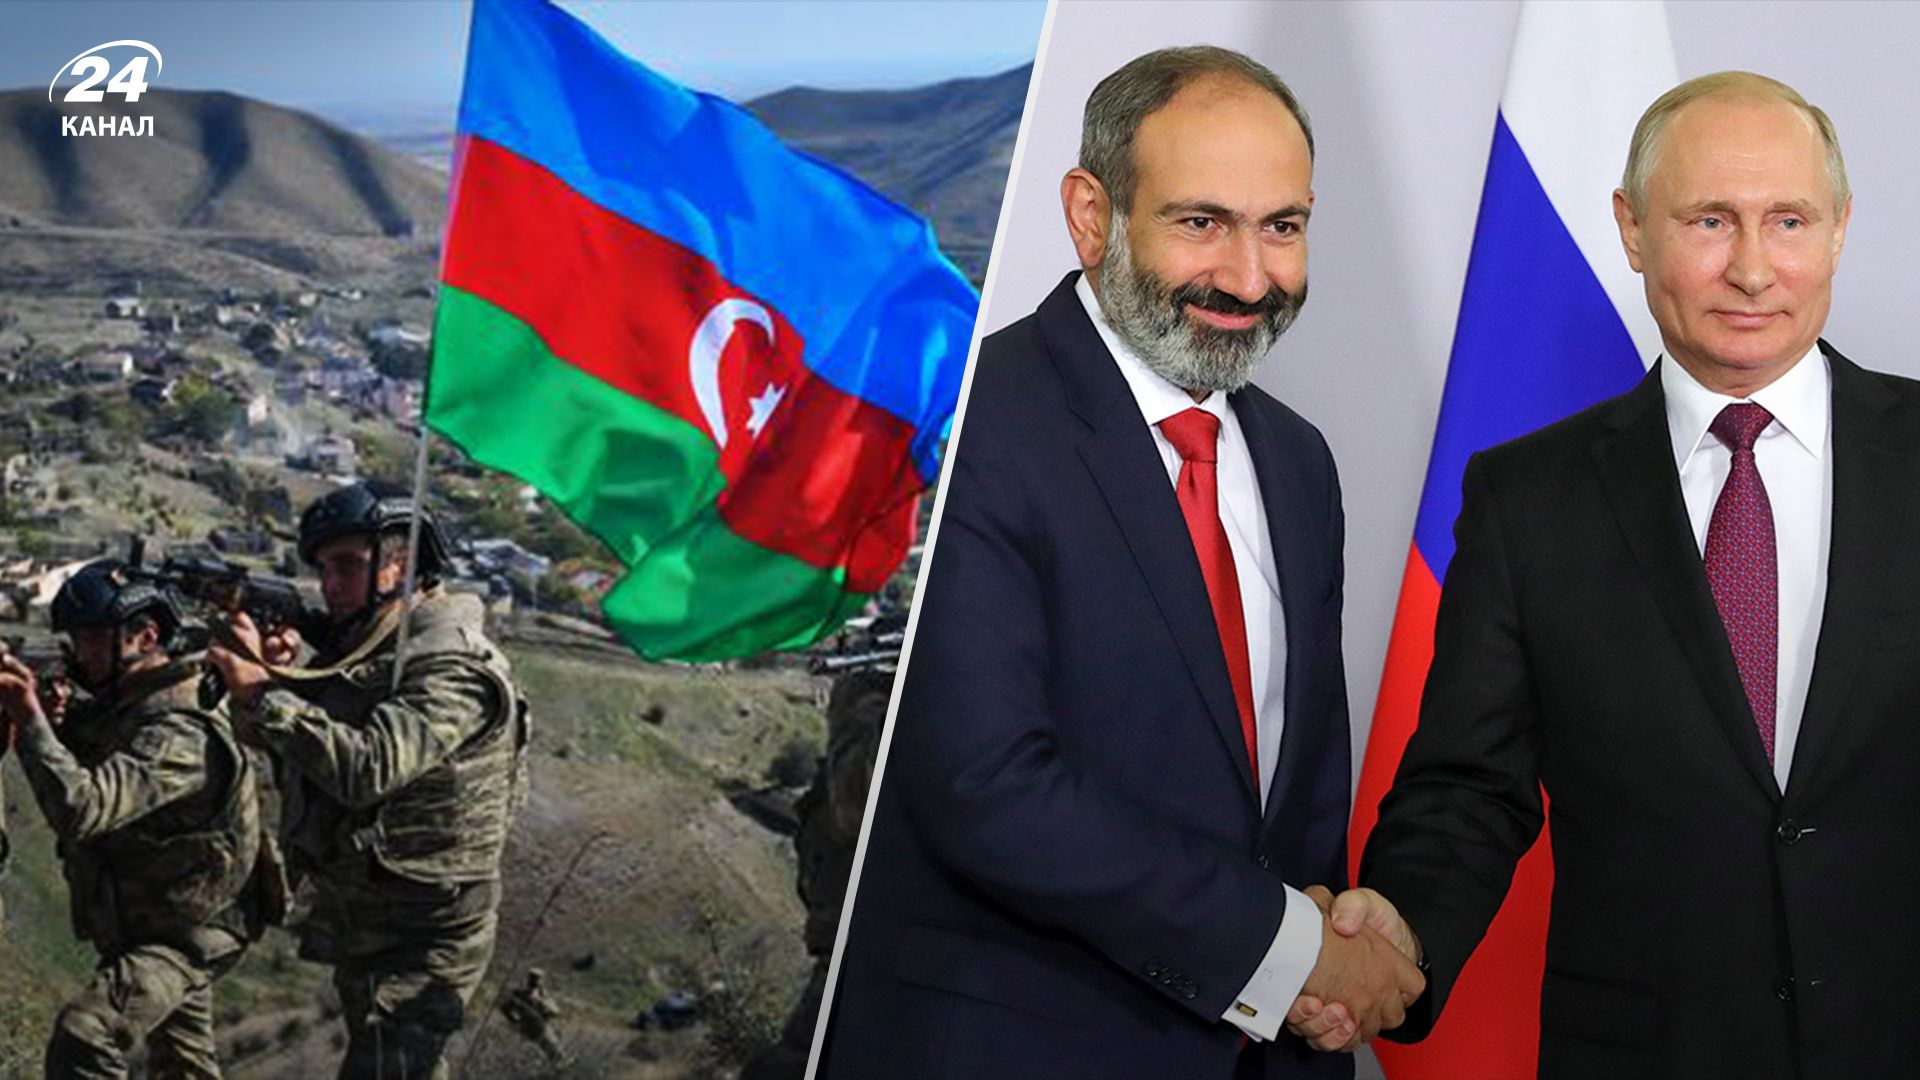 Обострение конфликта между Арменией и Азербайджаном – позиции сторон